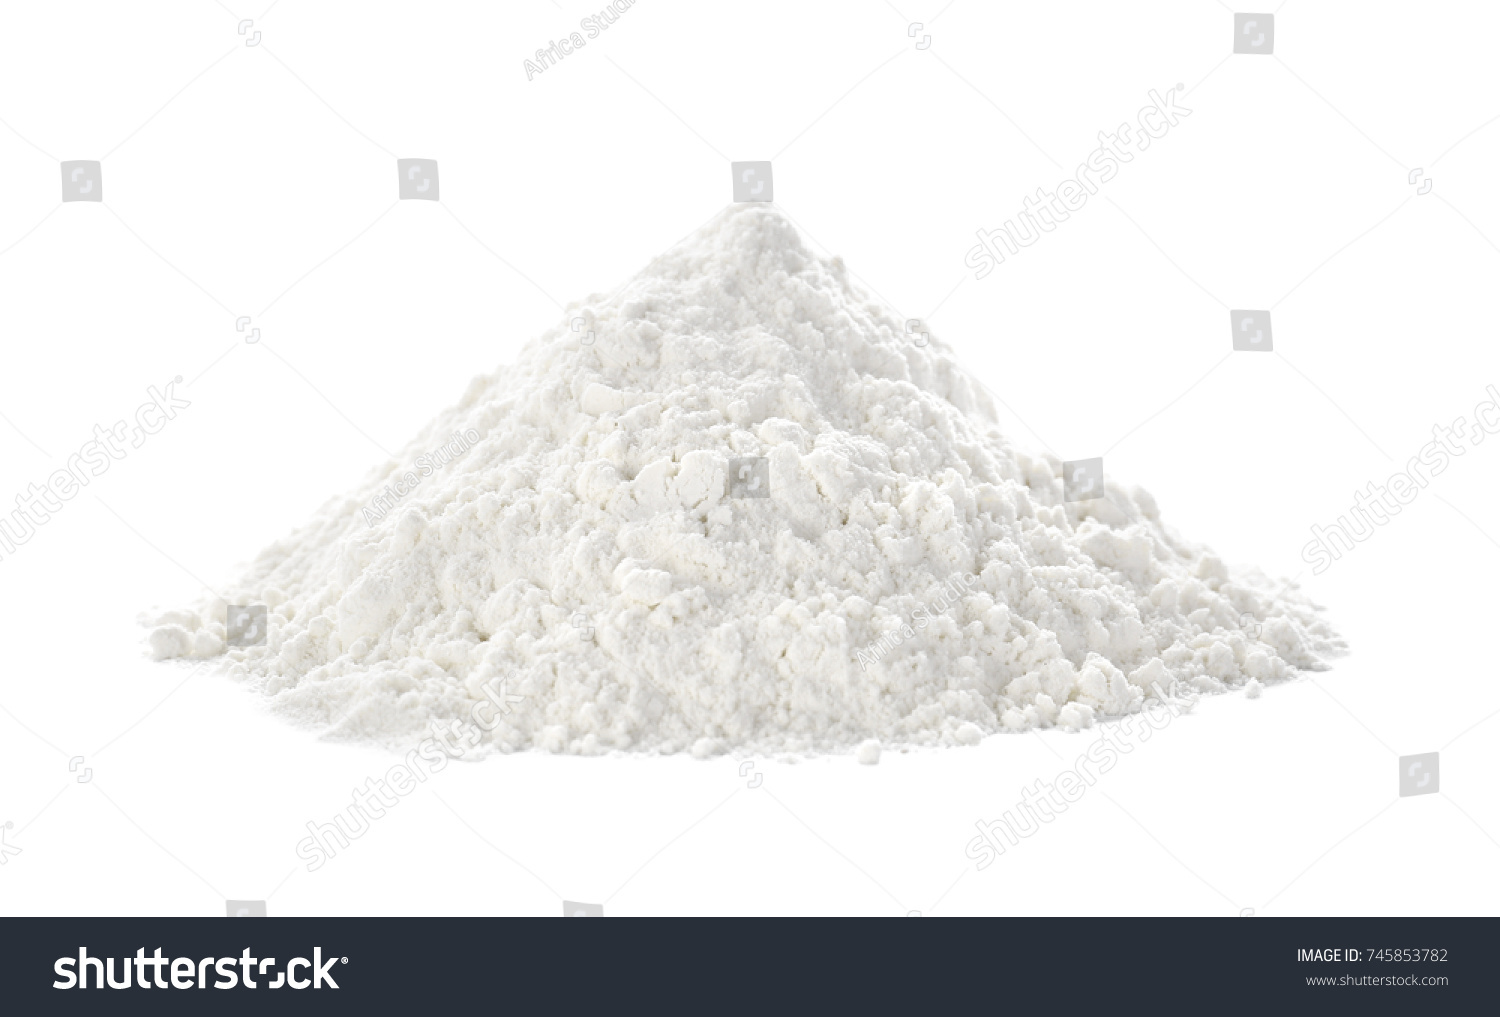 Heap of flour on white background #745853782